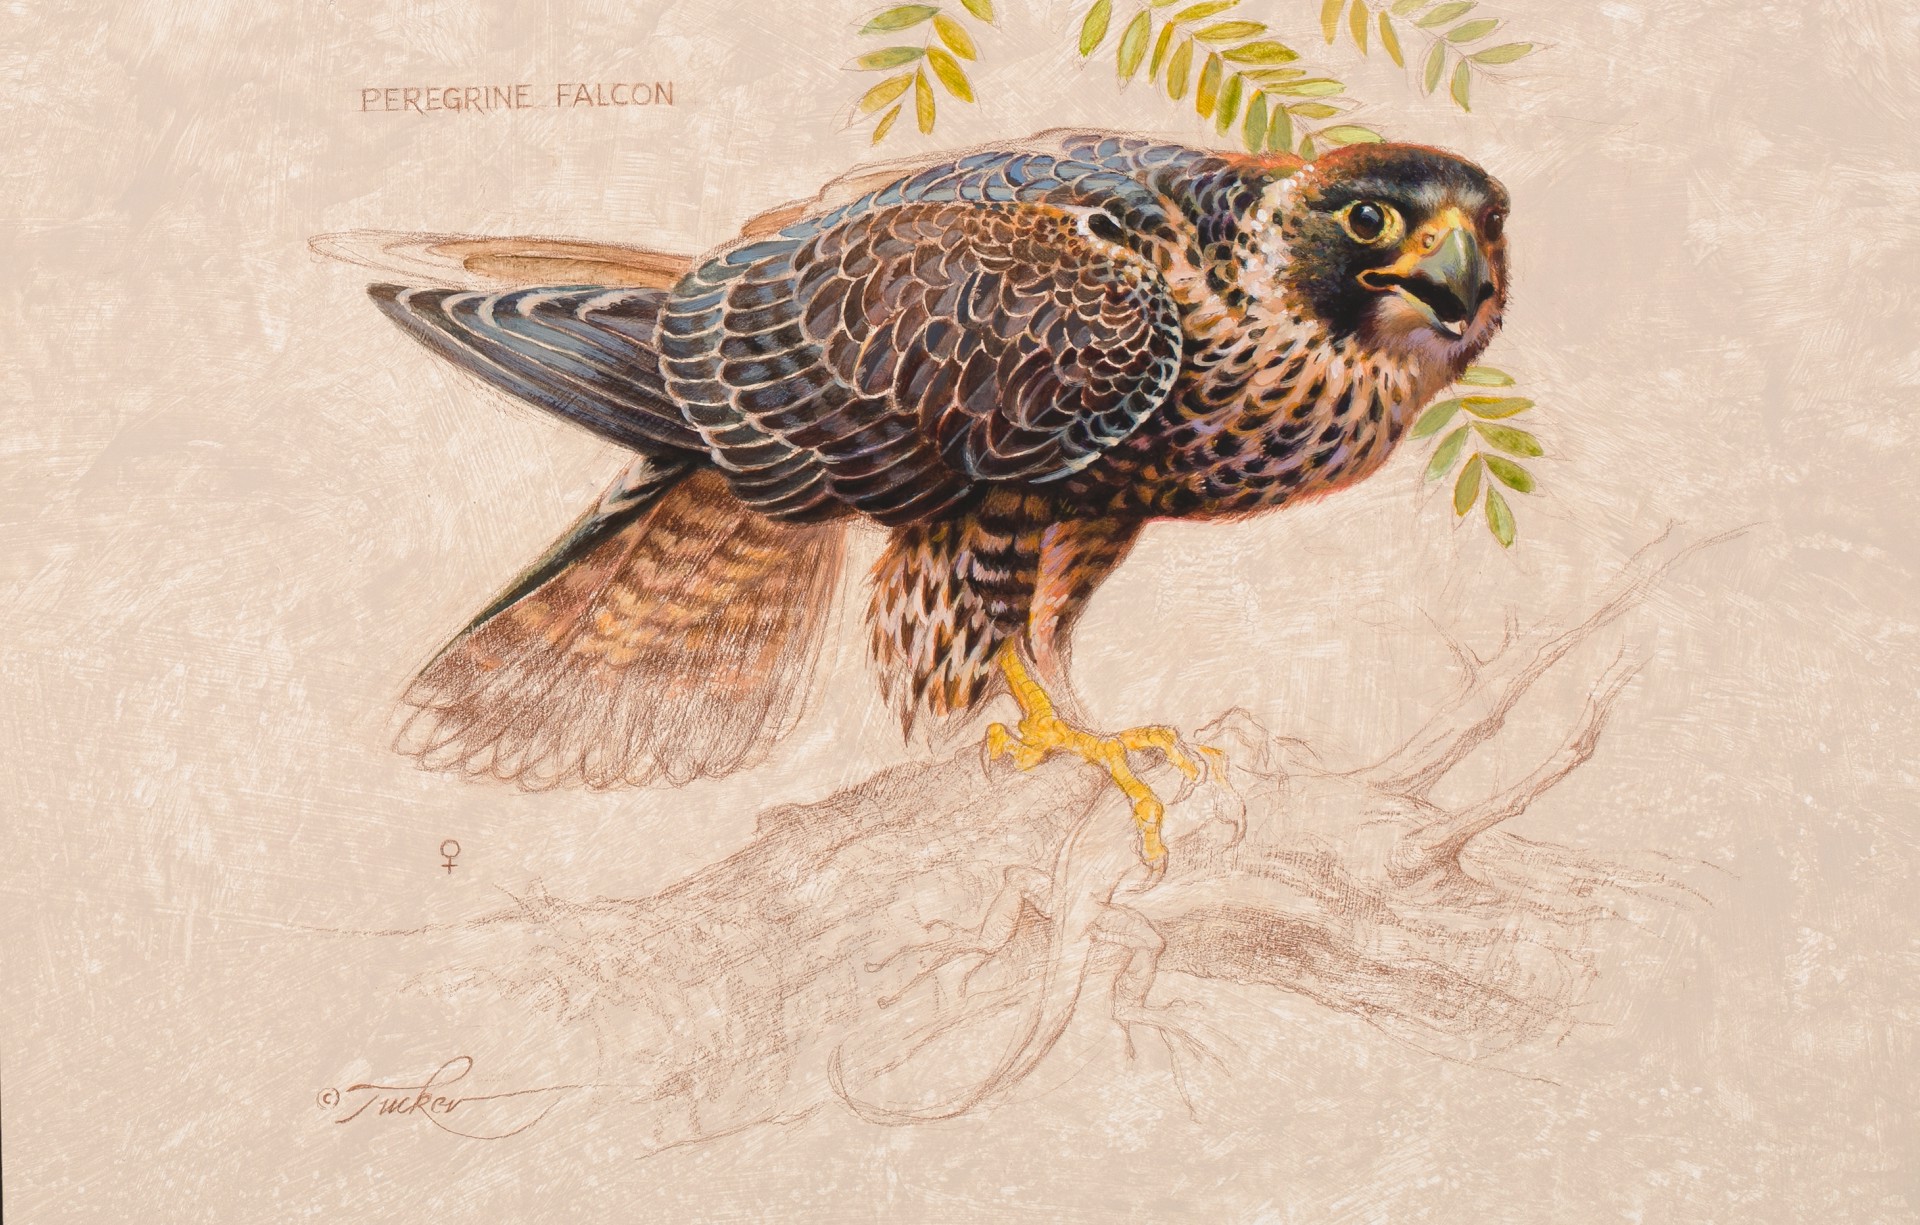 Peregrine Falcon (F) by Ezra Tucker